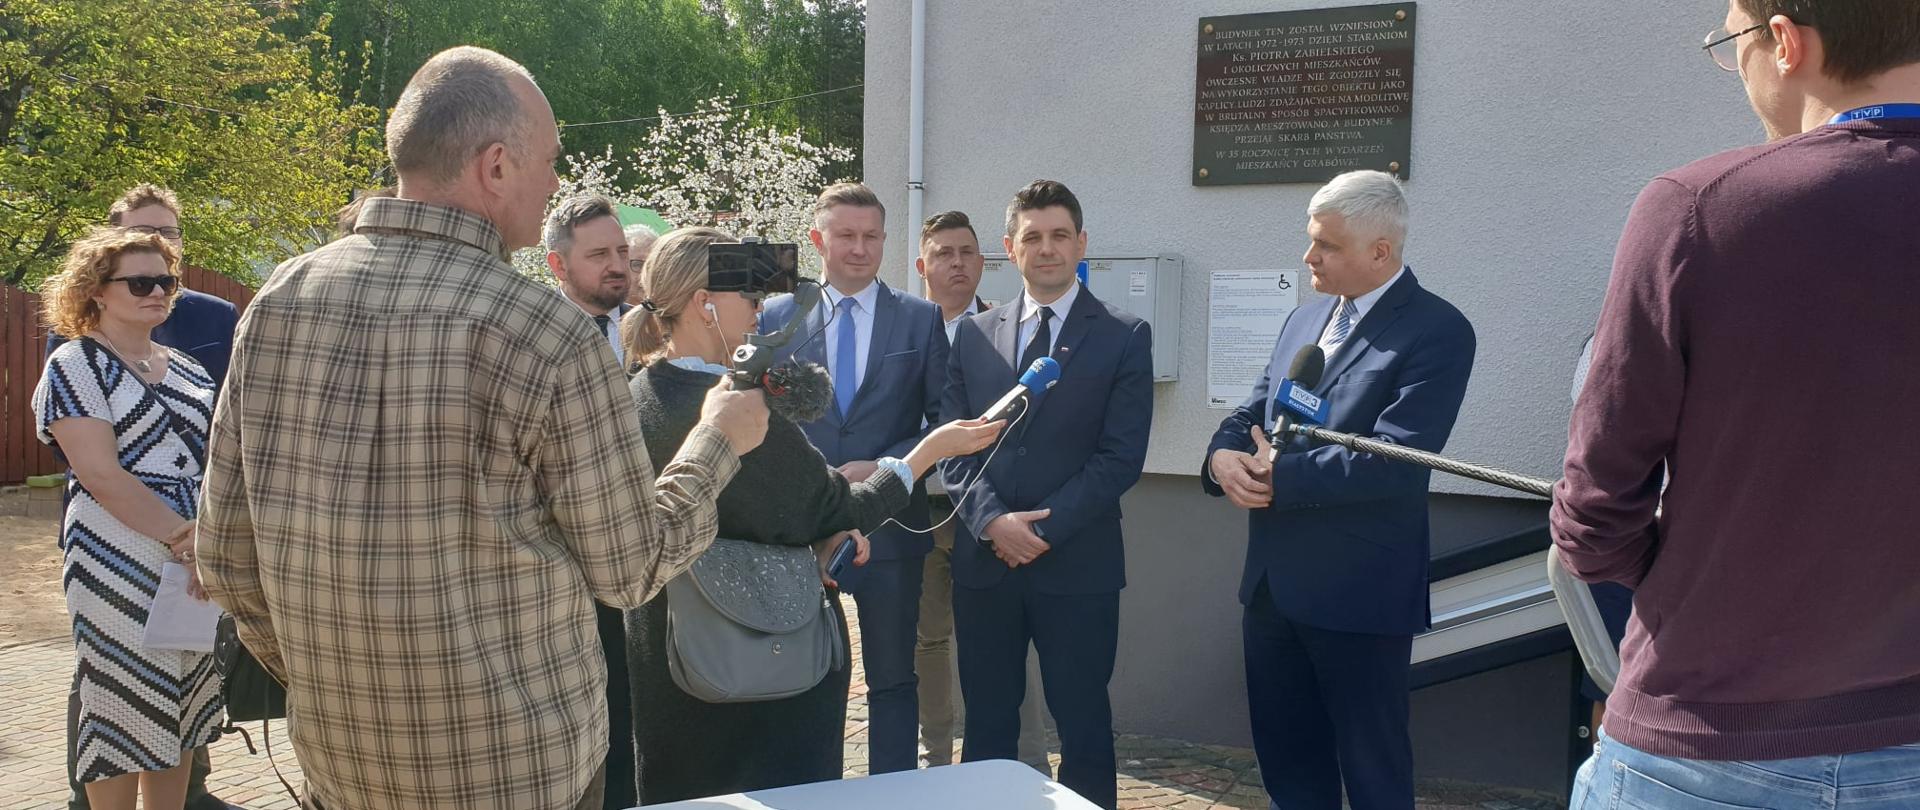 Uroczyste podpisanie umowy z firmą REDIL na budowę żłobka i przedszkola w Sobolewie.
